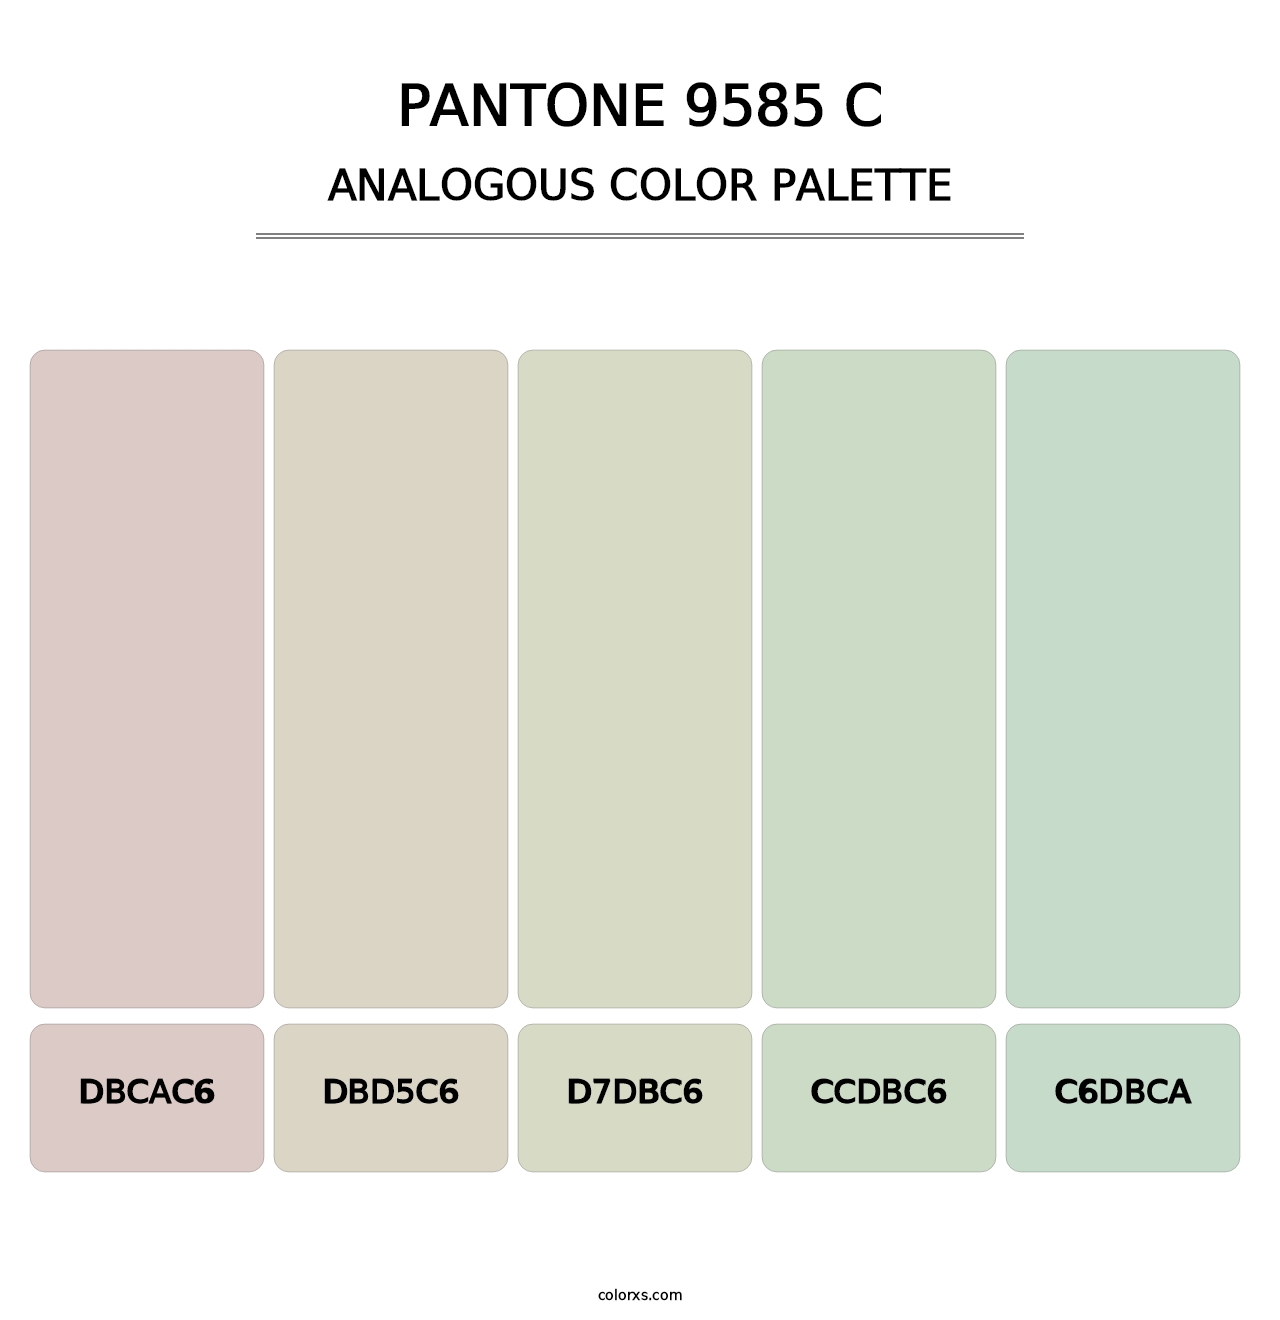 PANTONE 9585 C - Analogous Color Palette